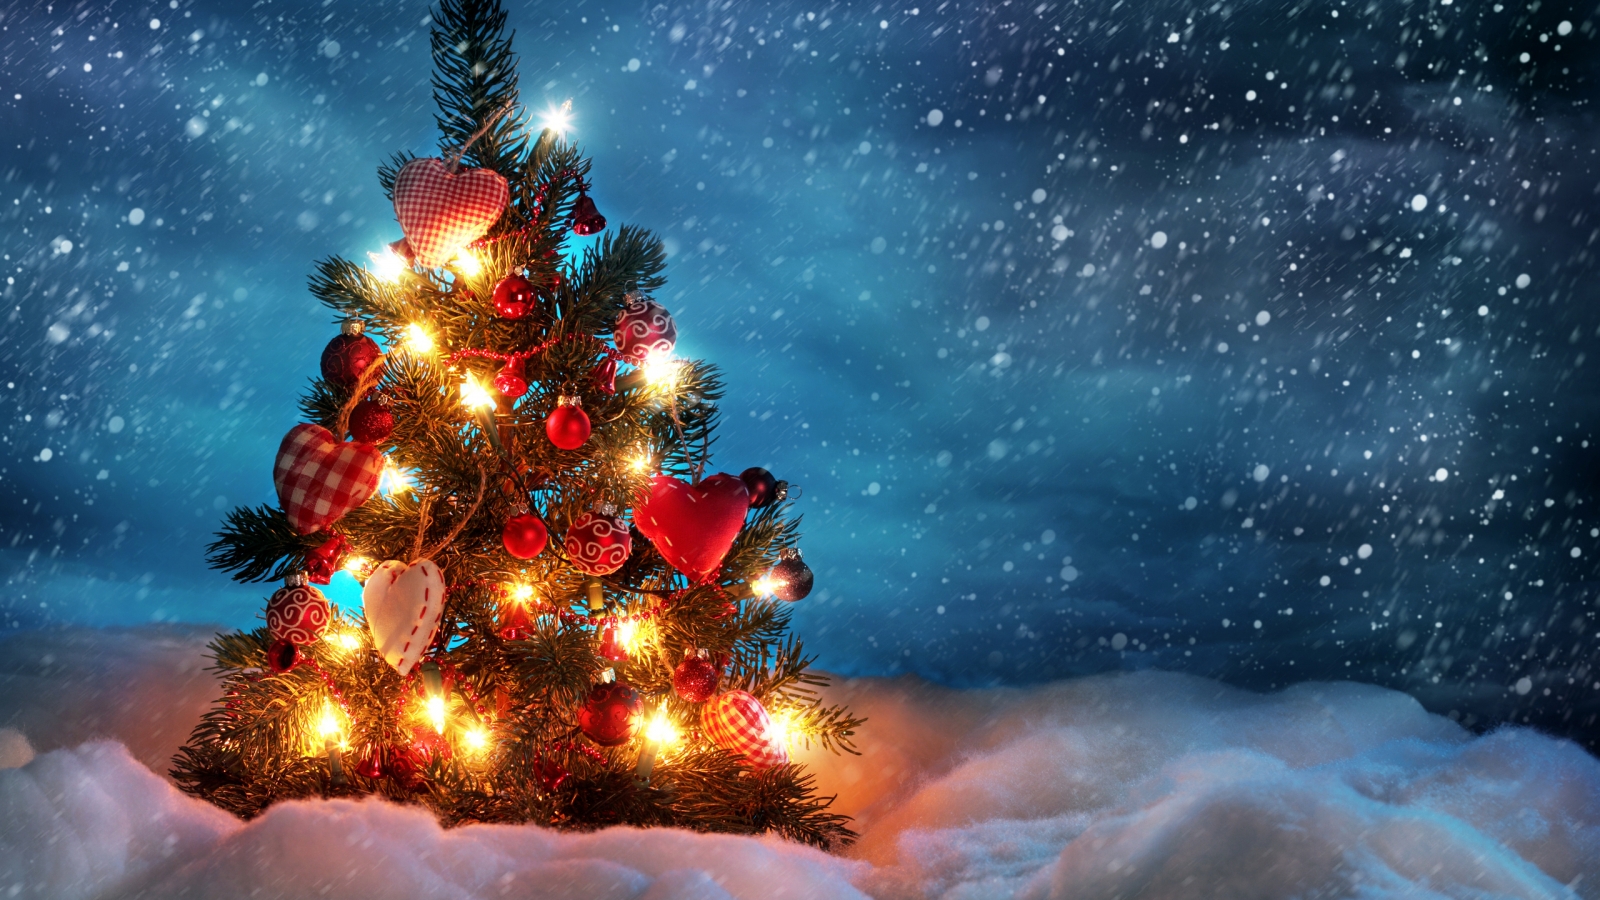 Lovely Christmas Tree for 1600 x 900 HDTV resolution